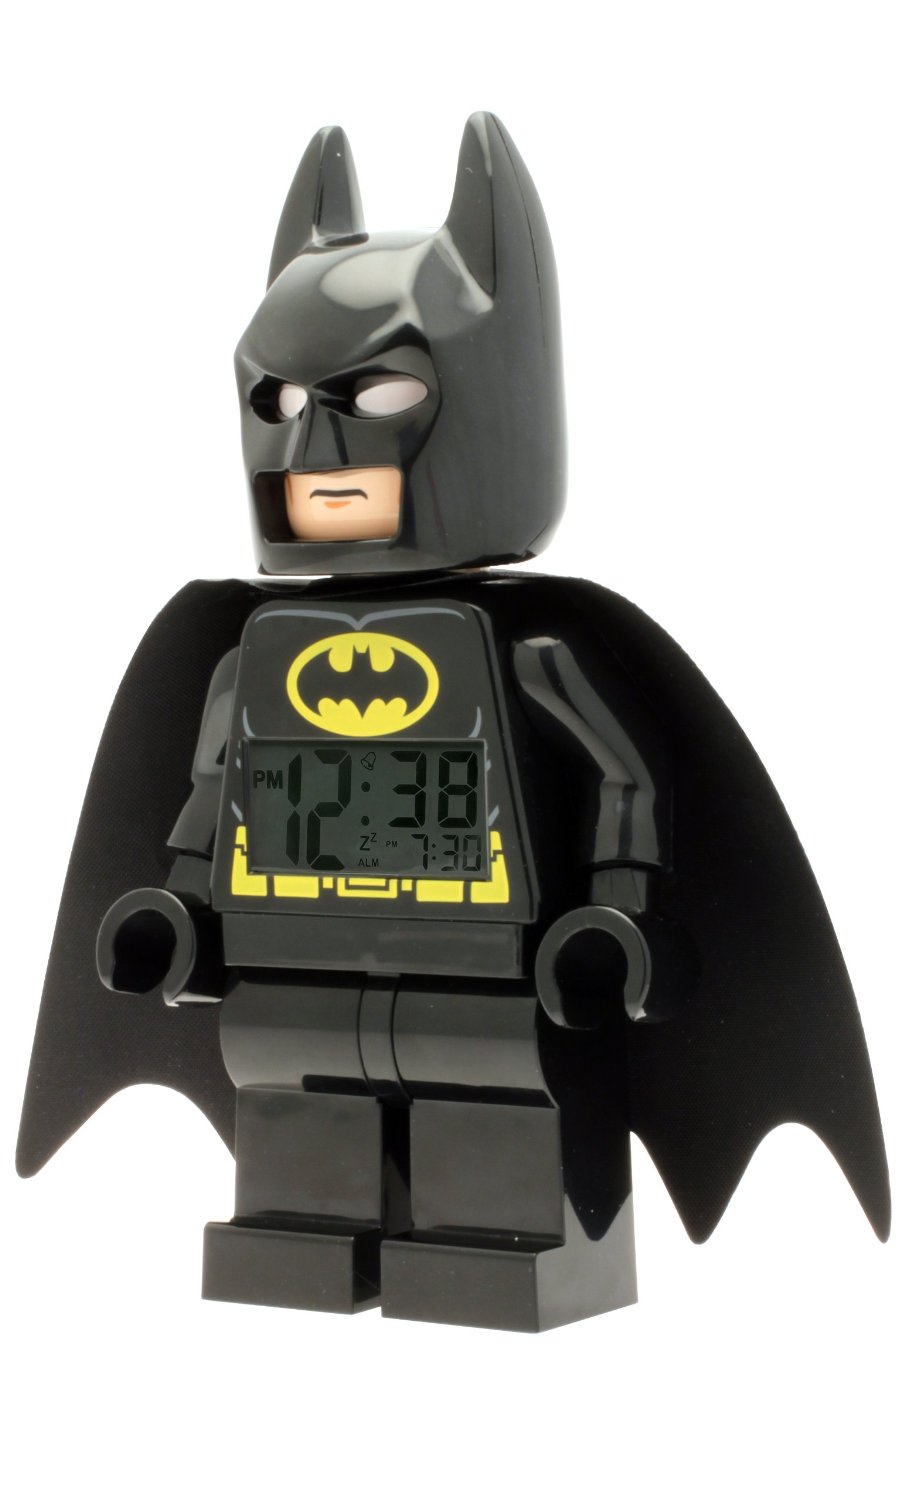 Réveil Batman Lego - Super Insolite